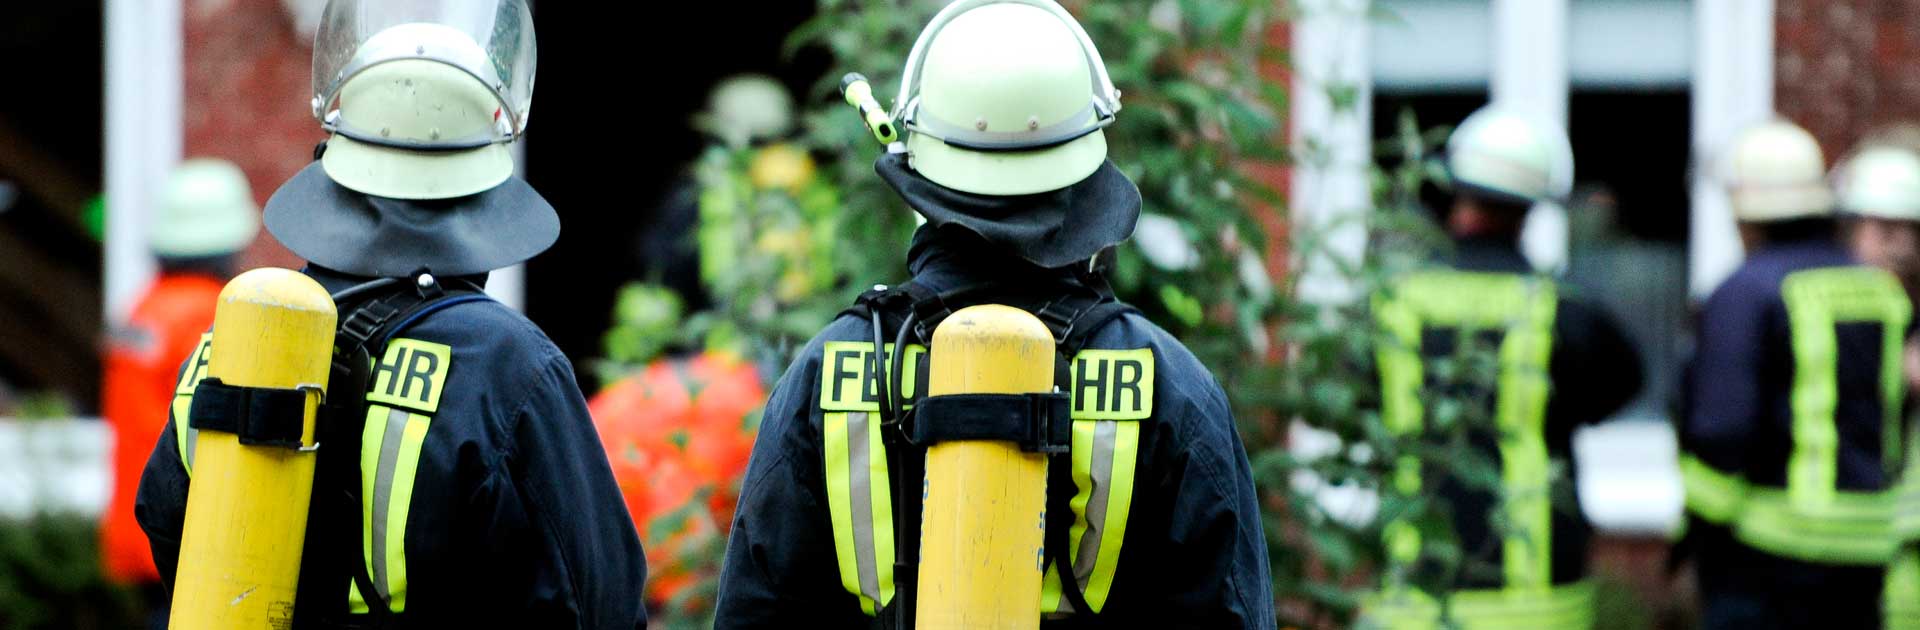 Man sieht zwei Feuerwehrmänner von hinten. Sie tragen volle Schutzkleidung: Weiße Helme, schwarze Schutzkleidung mit neon Streifen und gelben Sauerstoffflaschen.